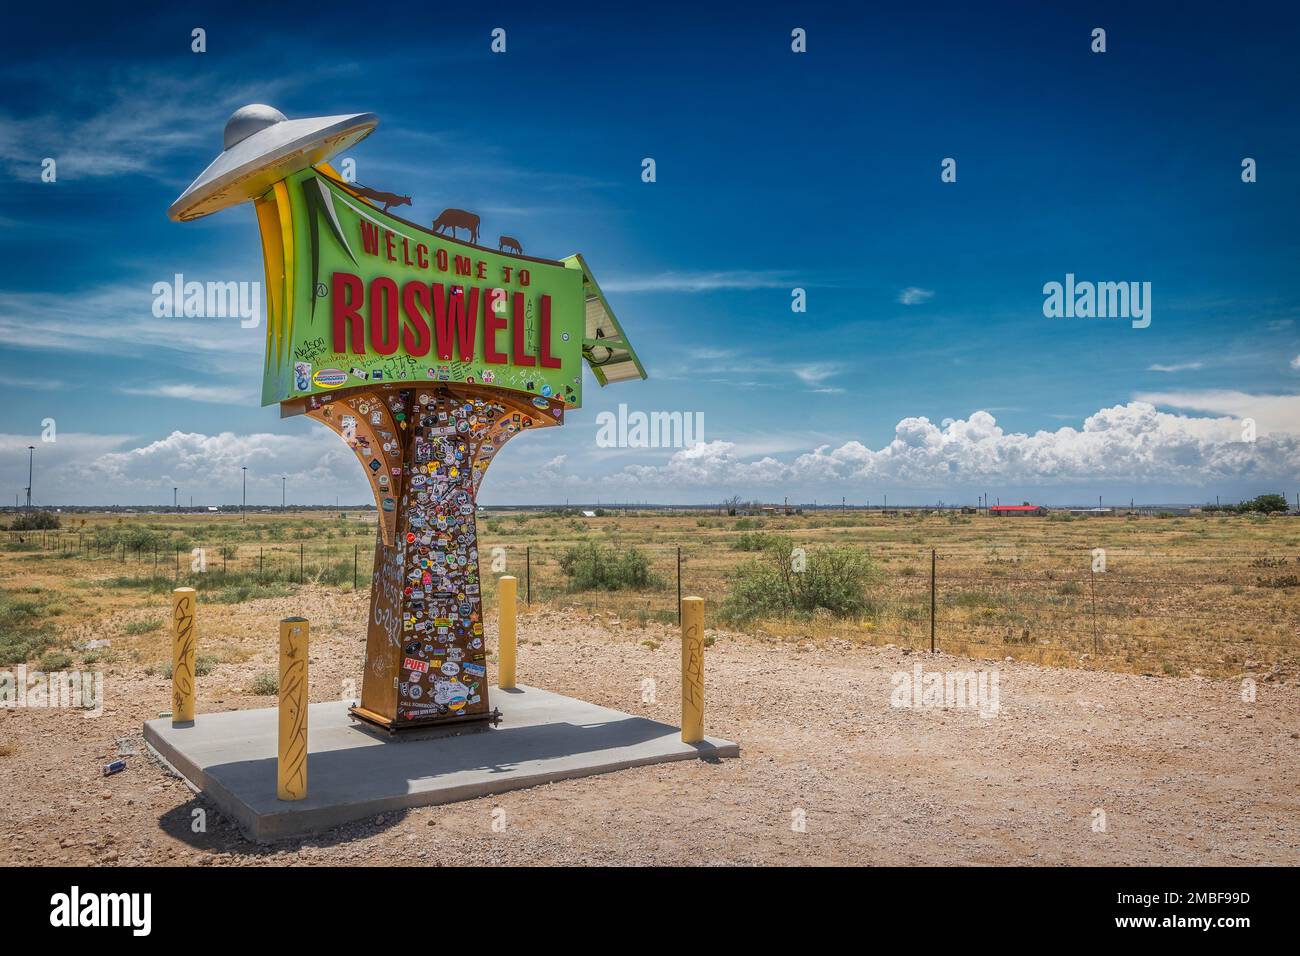 L'insegna colorata, a nord della città sull'autostrada 285, accoglie i viaggiatori a Roswell, New Mexico. Foto Stock